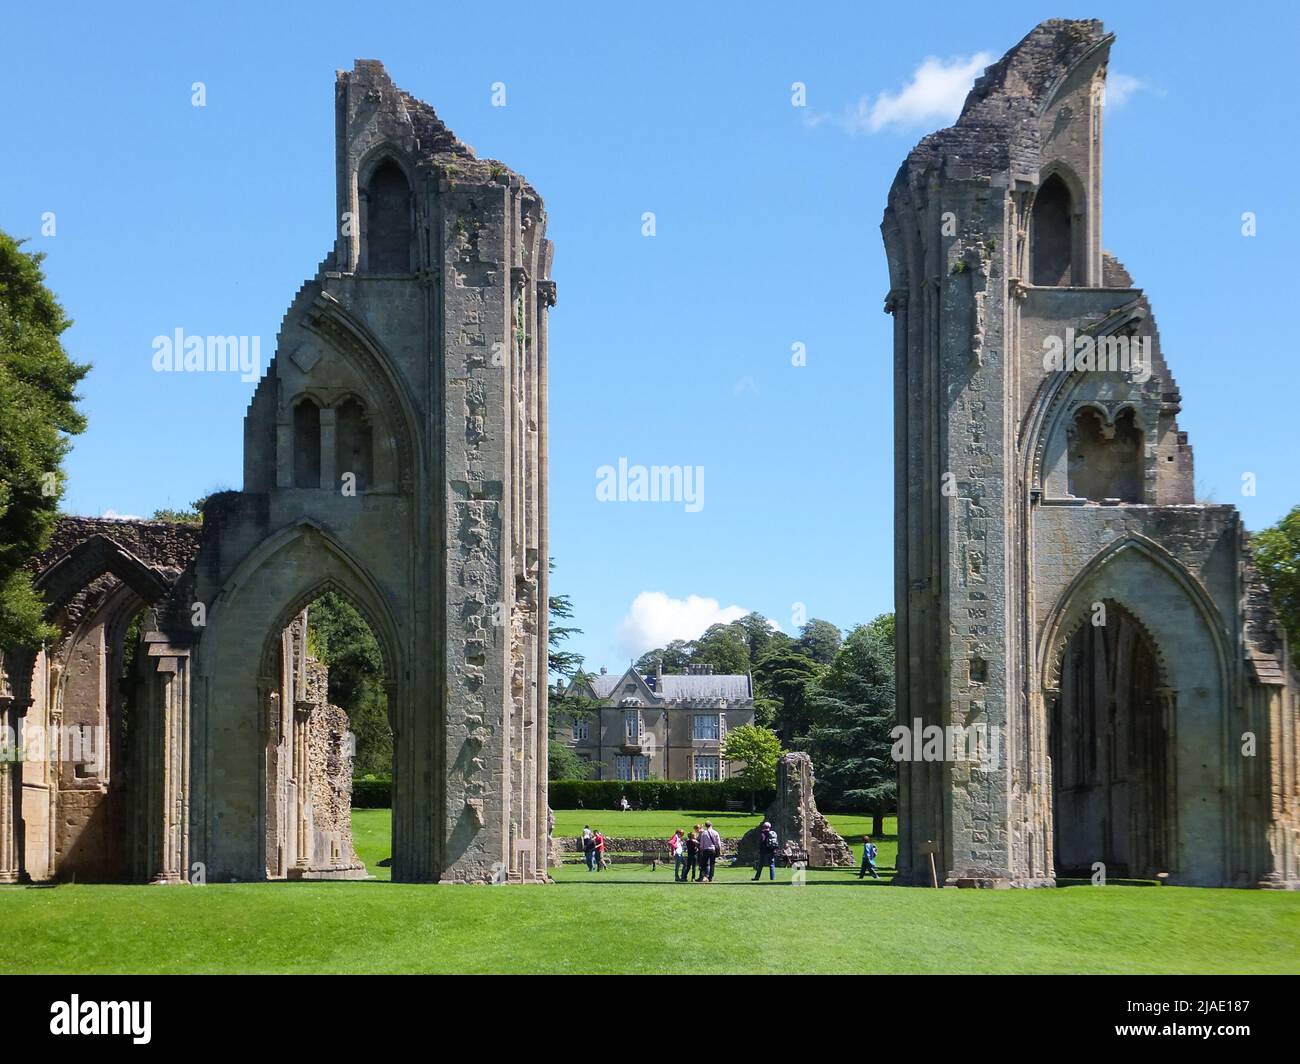 Les ruines de l'abbaye de Glastonbury sont hautes lors d'une belle journée d'été à Glastonbury, Somerset, Angleterre, Royaume-Uni. Banque D'Images